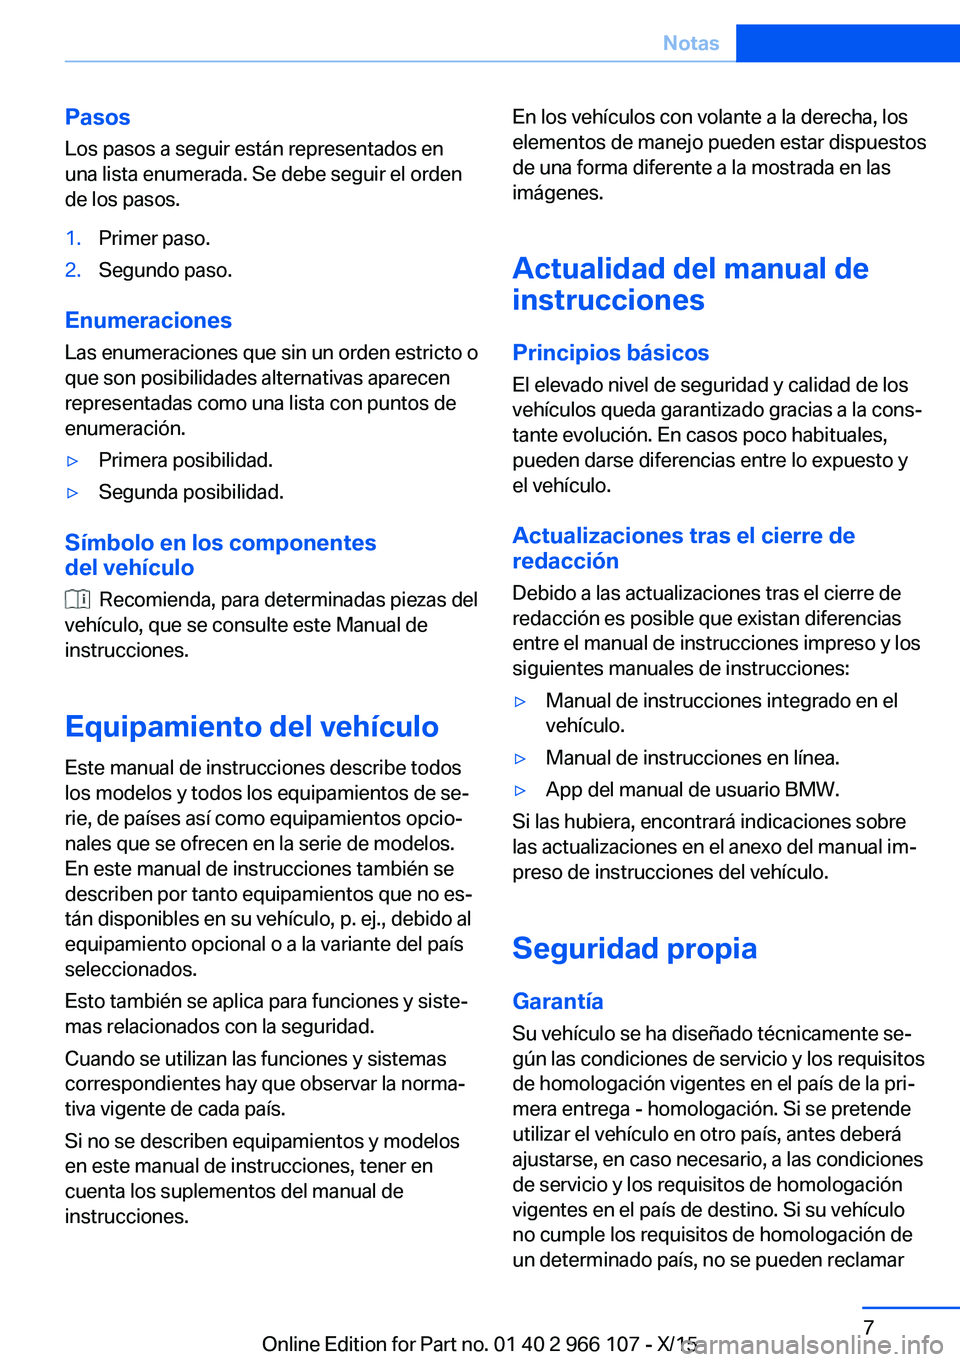 BMW 3 SERIES 2016  Manuales de Empleo (in Spanish) Pasos
Los pasos a seguir están representados en
una lista enumerada. Se debe seguir el orden
de los pasos.1.Primer paso.2.Segundo paso.
Enumeraciones
Las enumeraciones que sin un orden estricto o
que